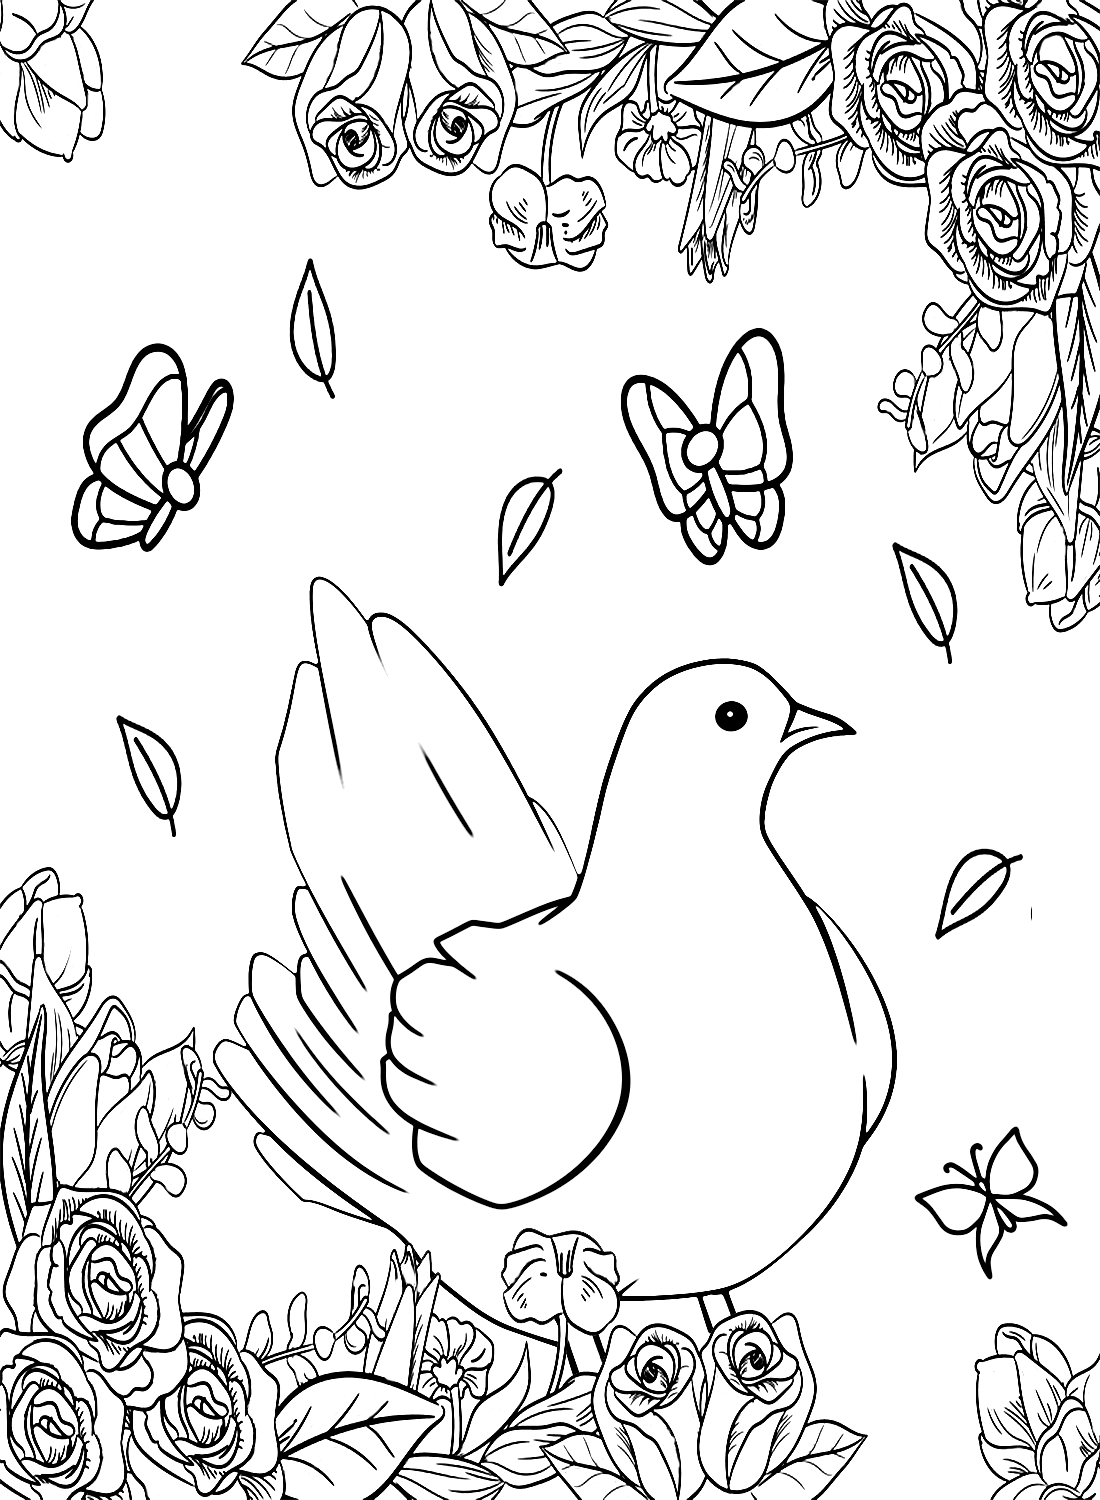 Taube mit Schmetterling und Rosen von Pigeon